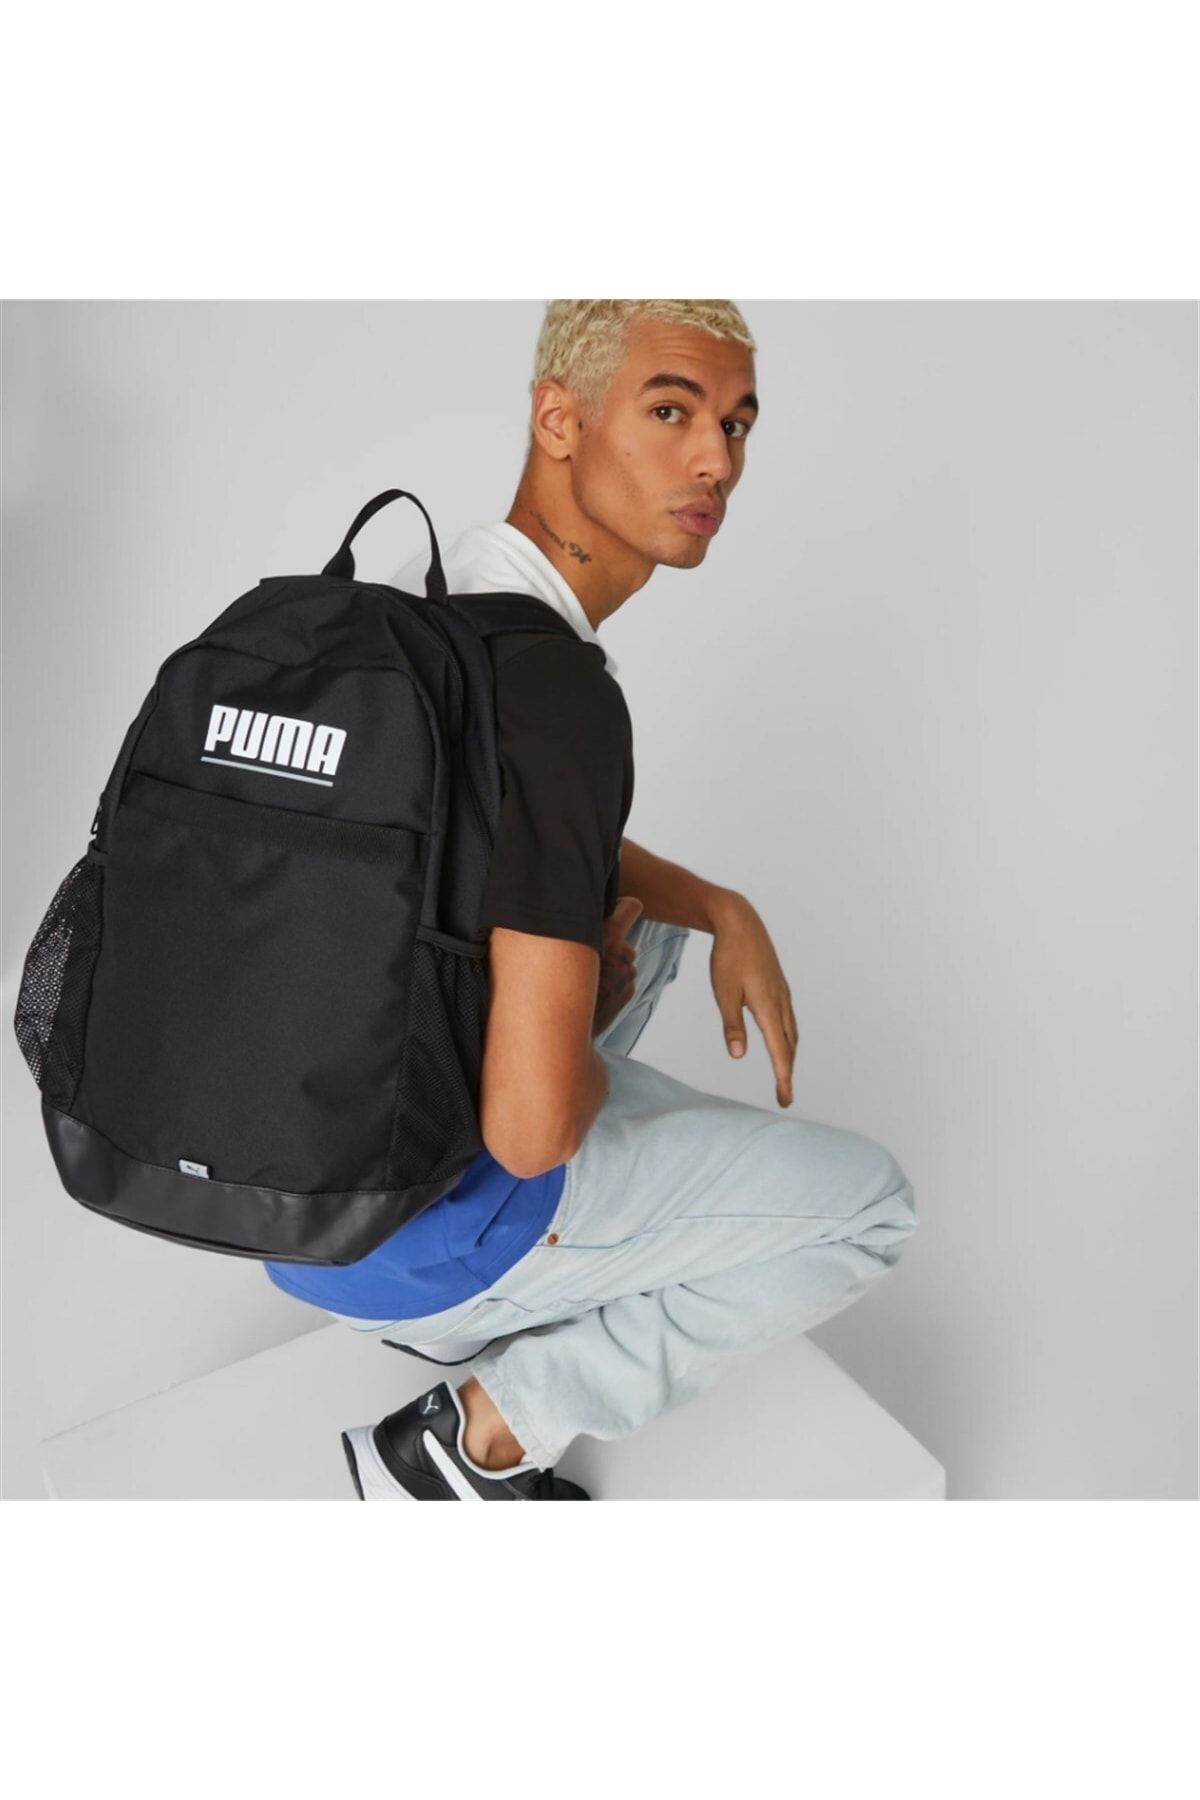 Puma Plus Backpack Black 079615-01 Backpack Trendyol 